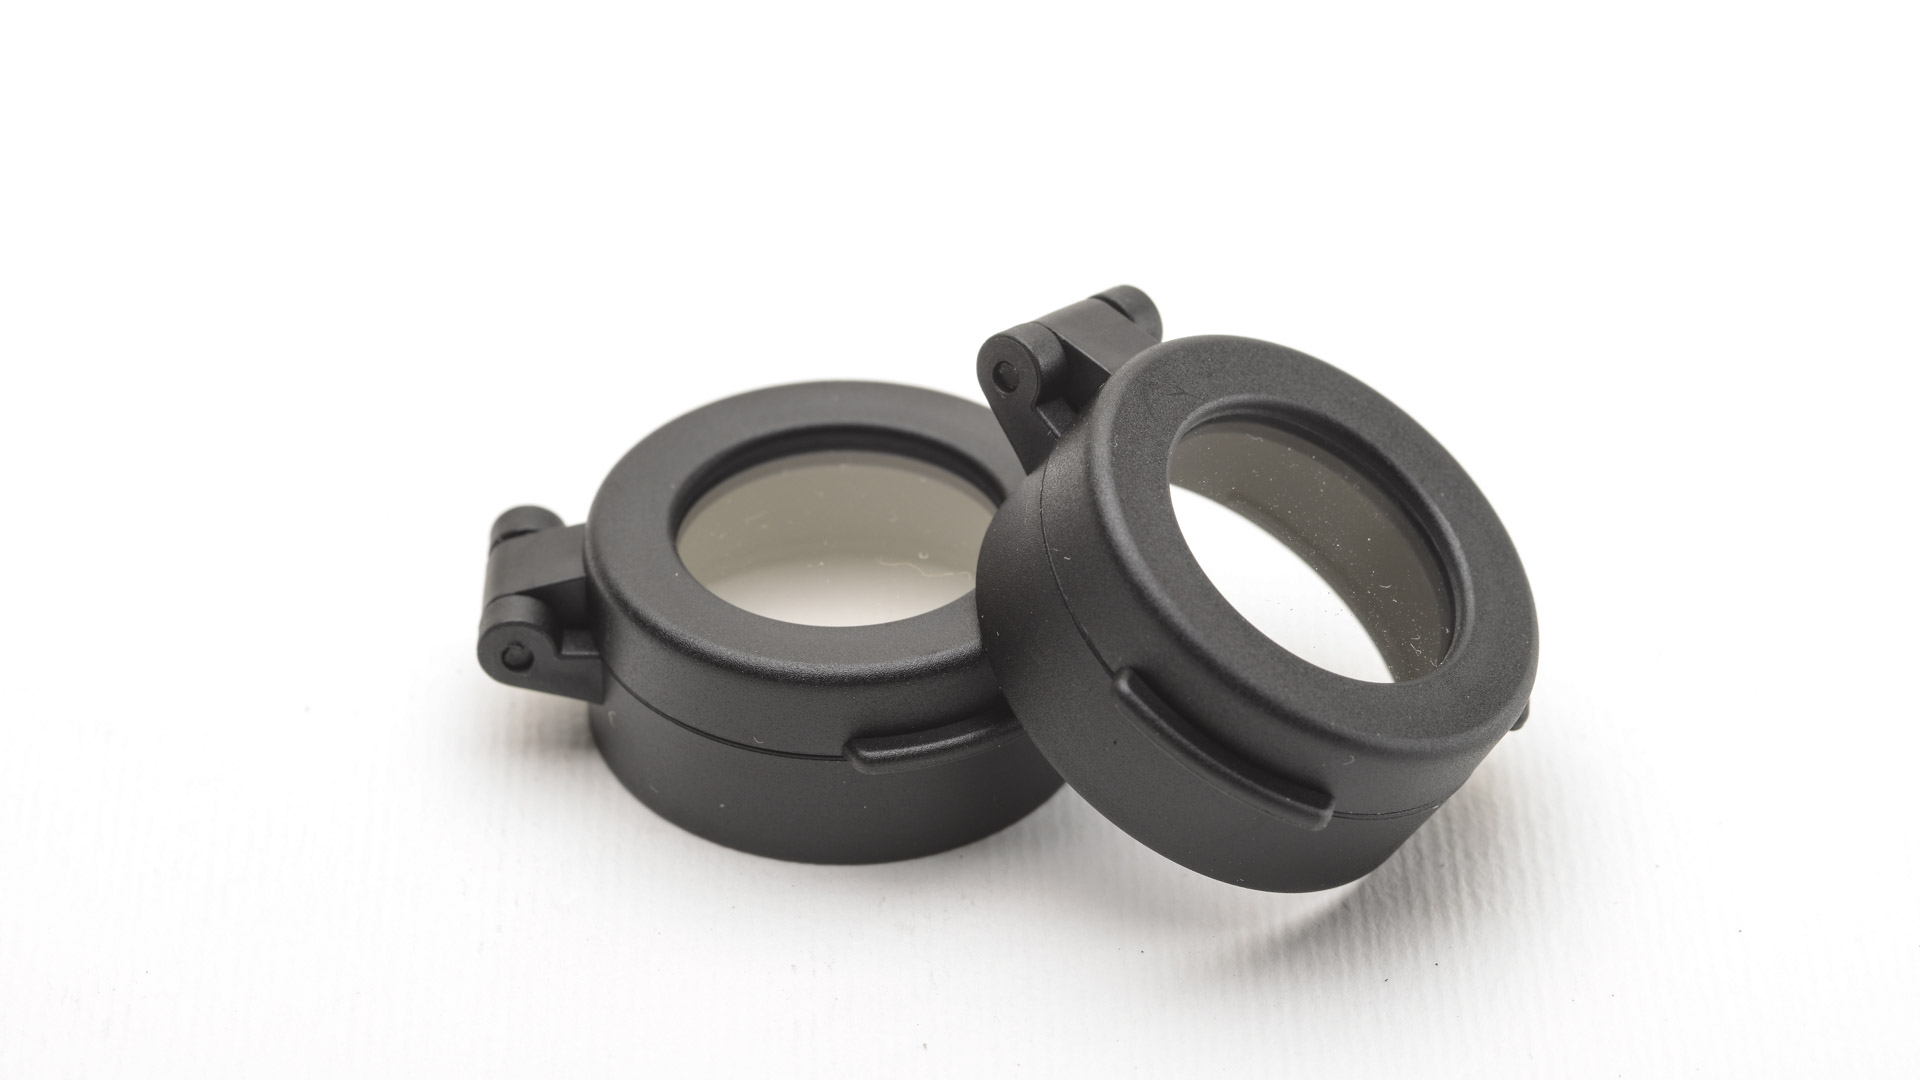 La confezione include due cover flip-up facilmente installabili a pressione; l'applicazione garantisce un livello superiore di protezione delle lenti